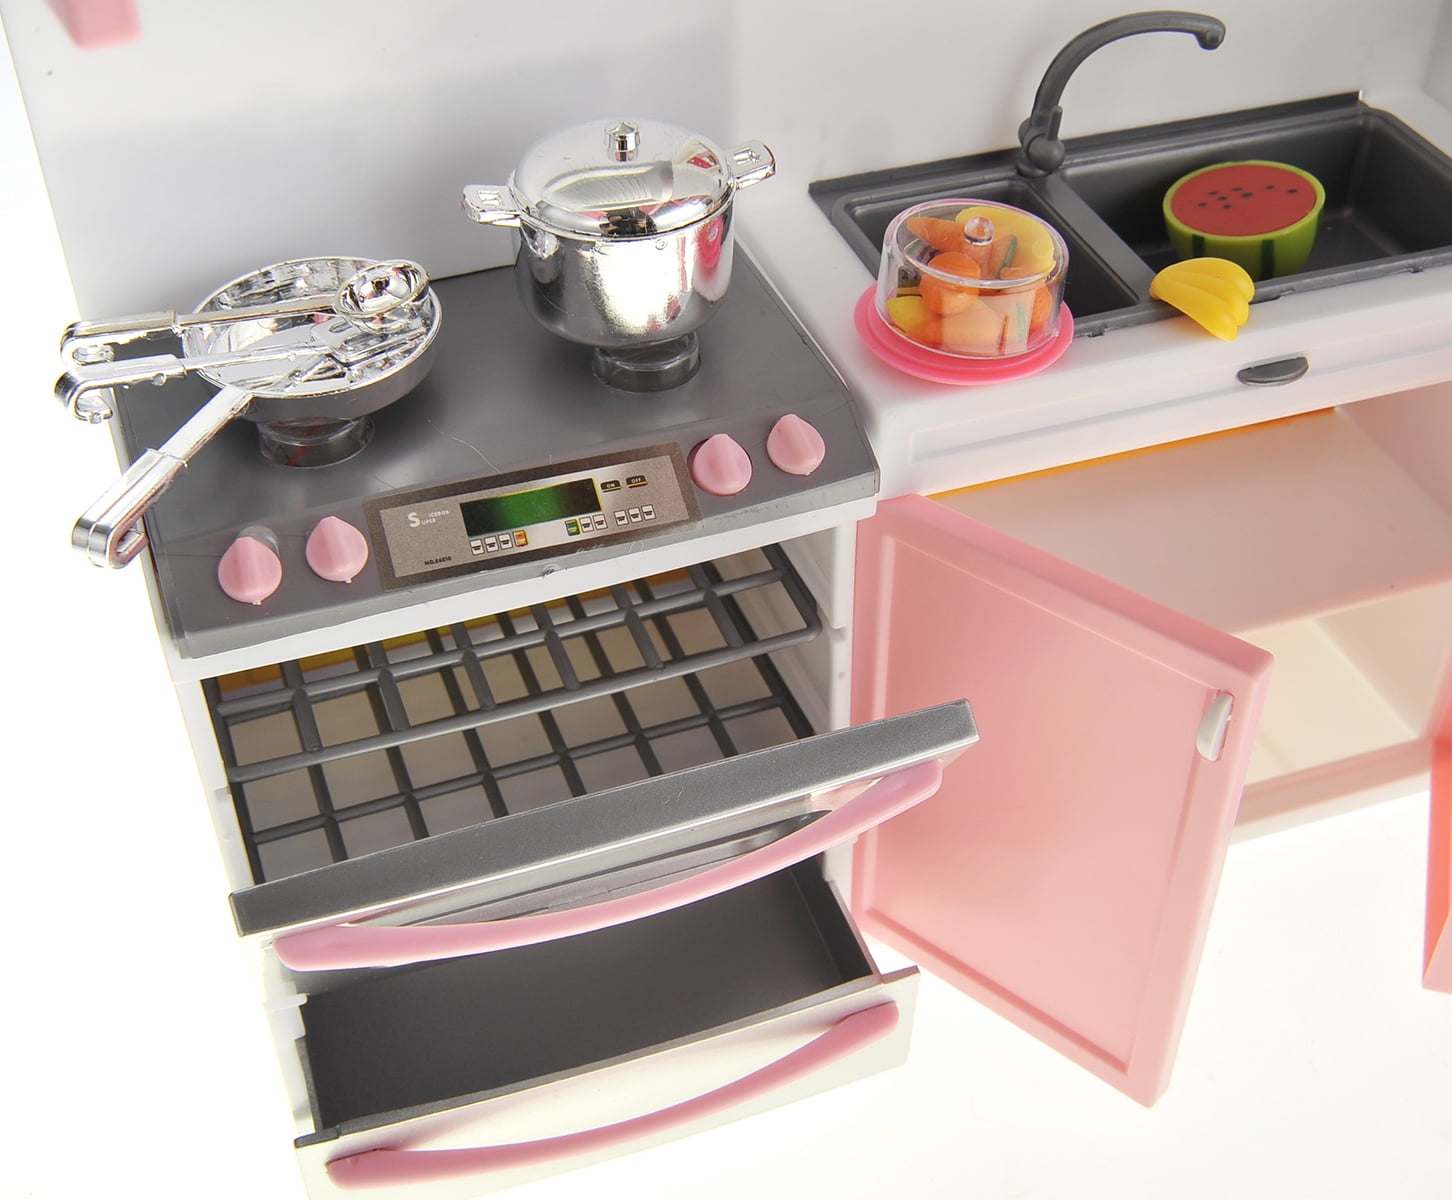 Kitchen Connection Modern Kitchen Playset - Pink 